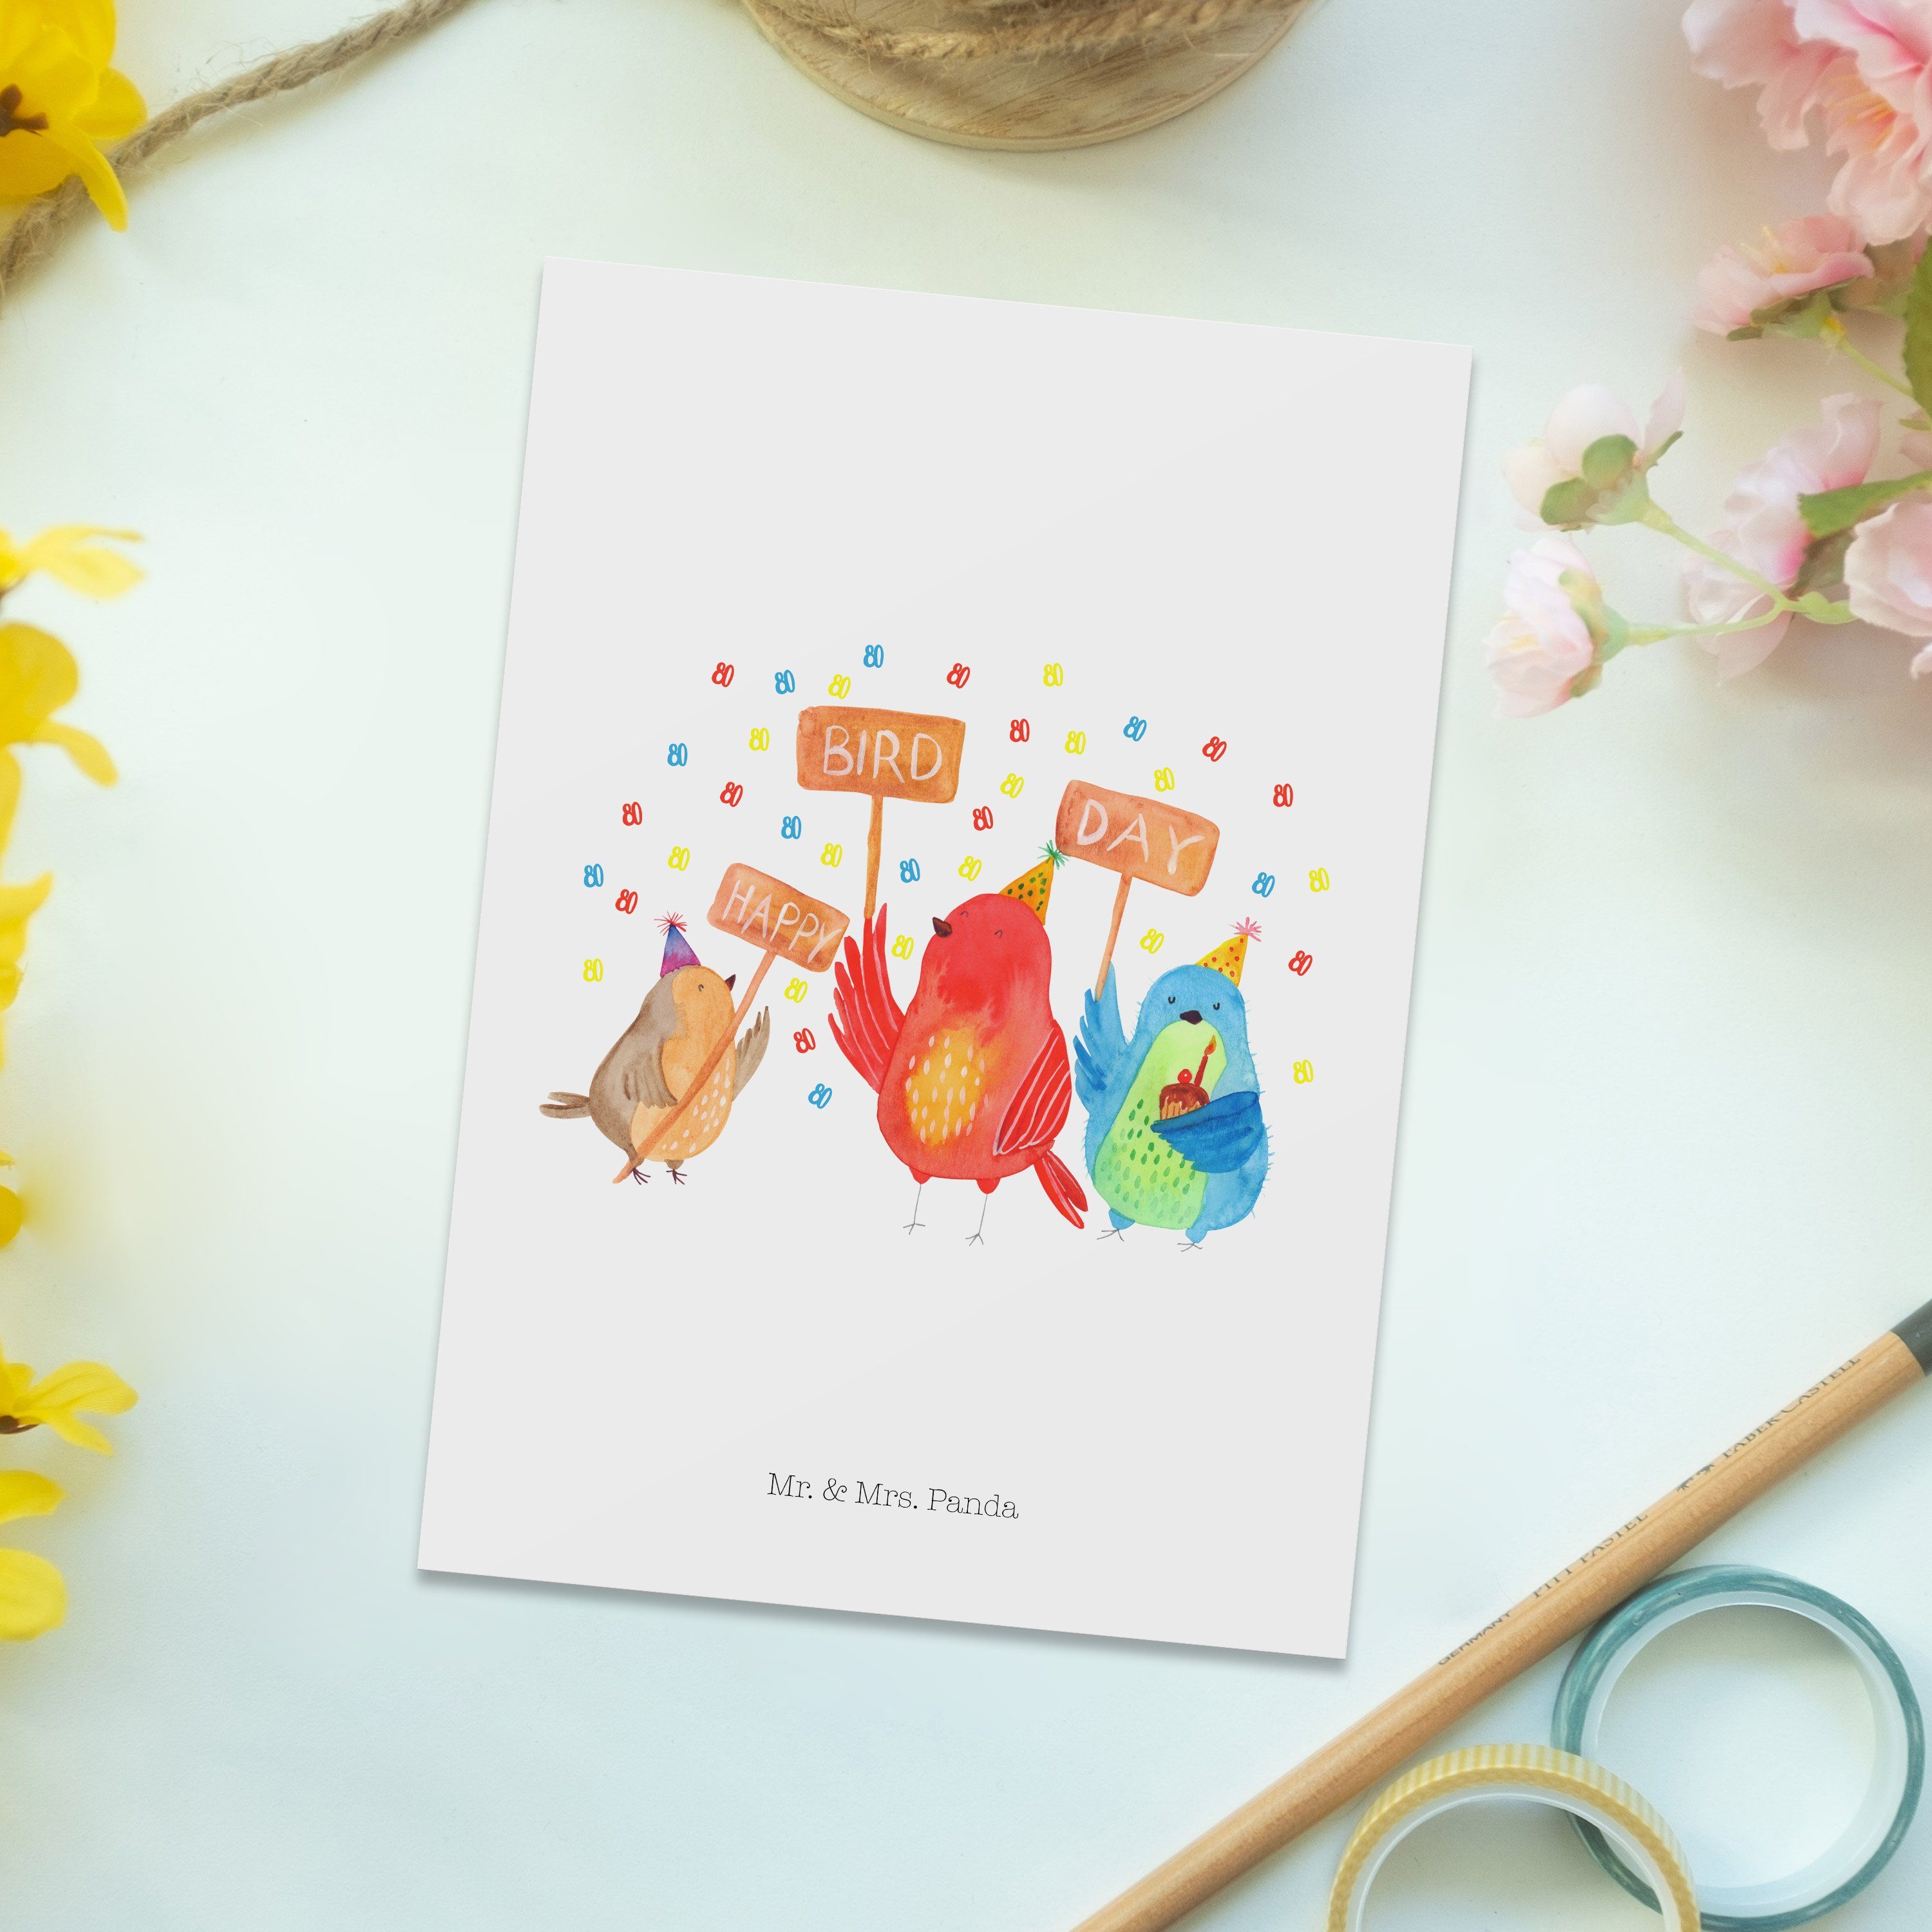 Mr. & Mrs. Panda Geschenk, Glückwuns Happy - Weiß Day Geburtstag Bird Herzlichen Postkarte - 80